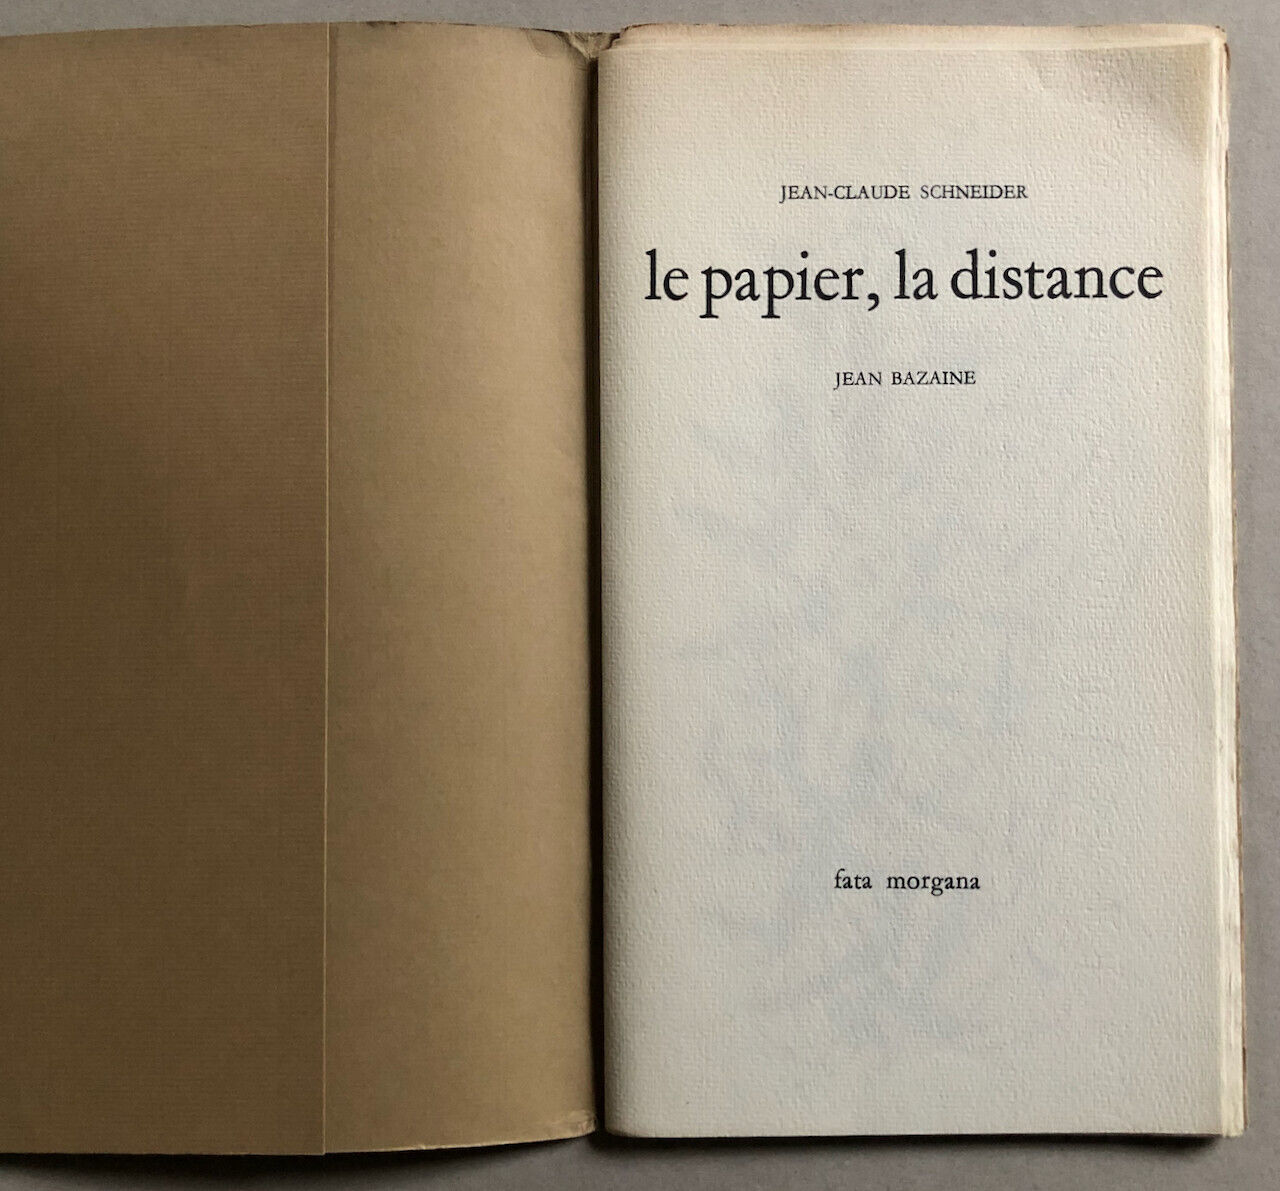 [Jean Bazaine] — J.C. Schneider — Le Papier, la distance — Fata Morgana — 1969.